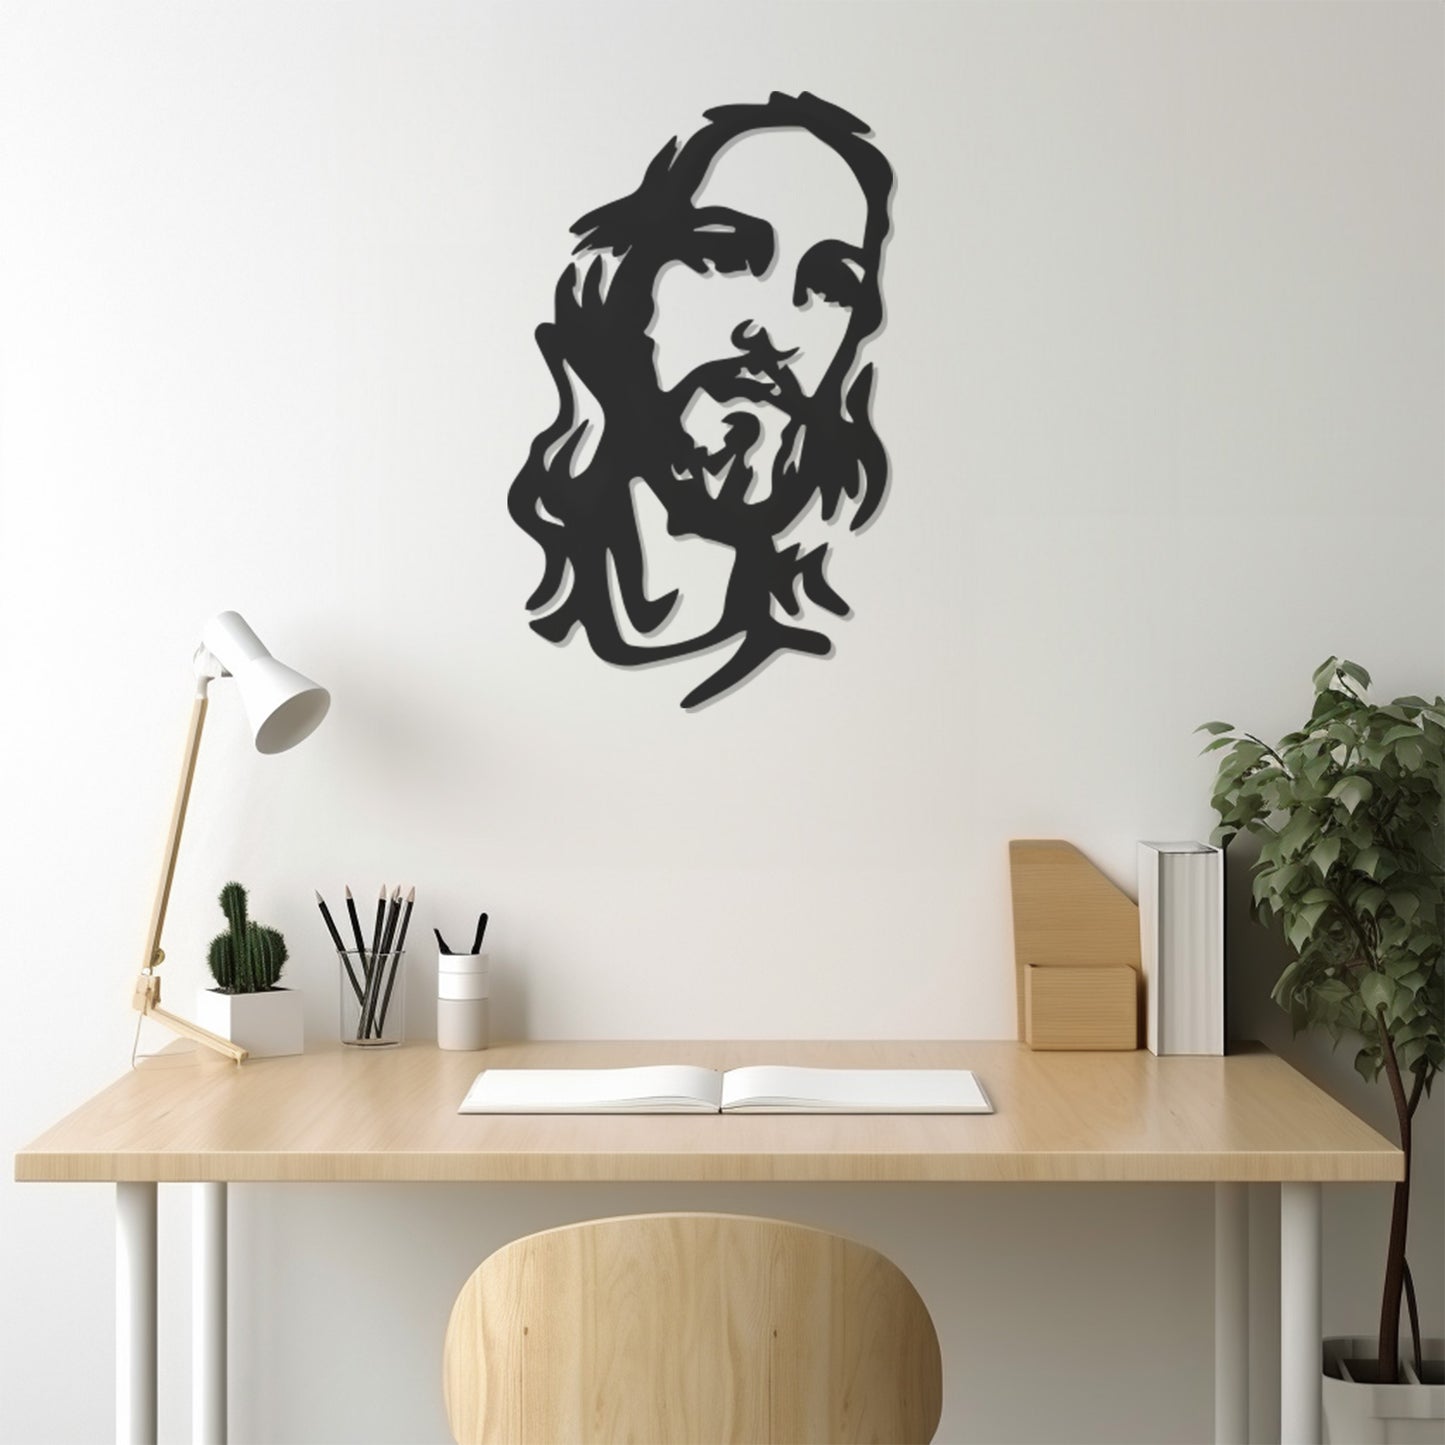 Jesus Siluet Wall Art